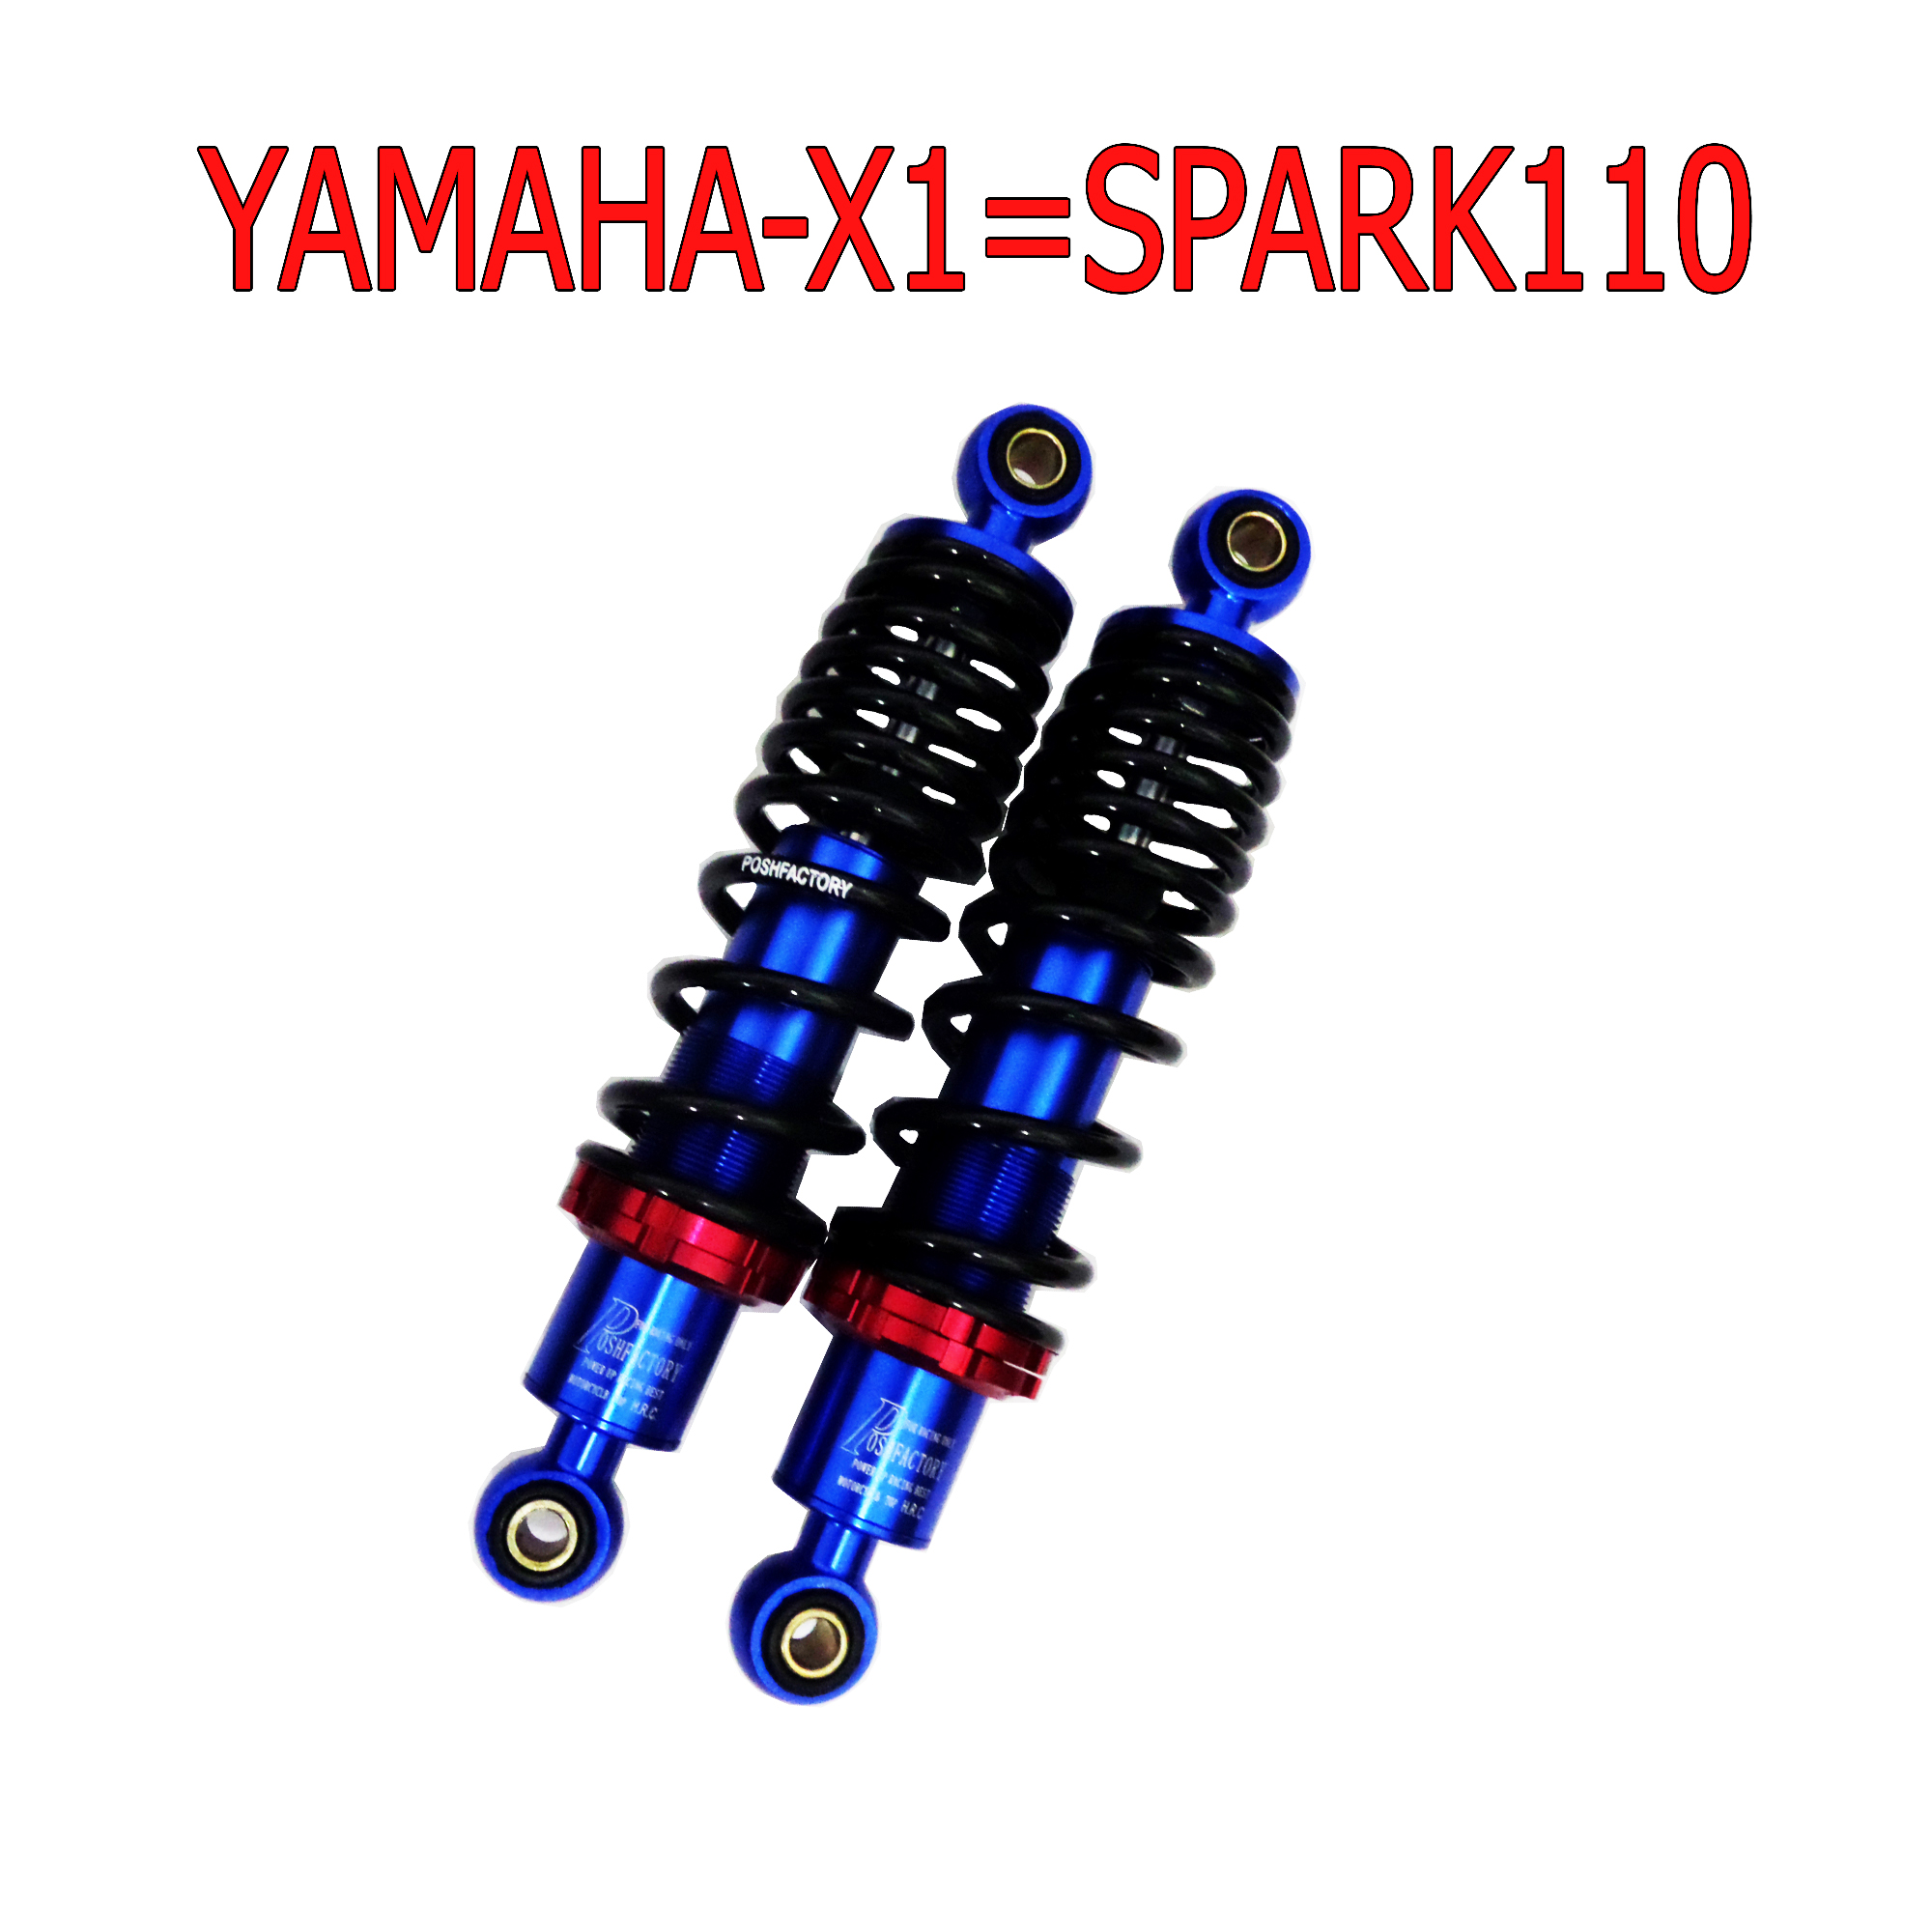 โช๊คหลังแต่งมอเตอร์ไซด์แบบ POSH สำหรับ YAMAHA-XI=SPARK110 (สปริงดำ/น้ำเงิน)ยาว290 mm